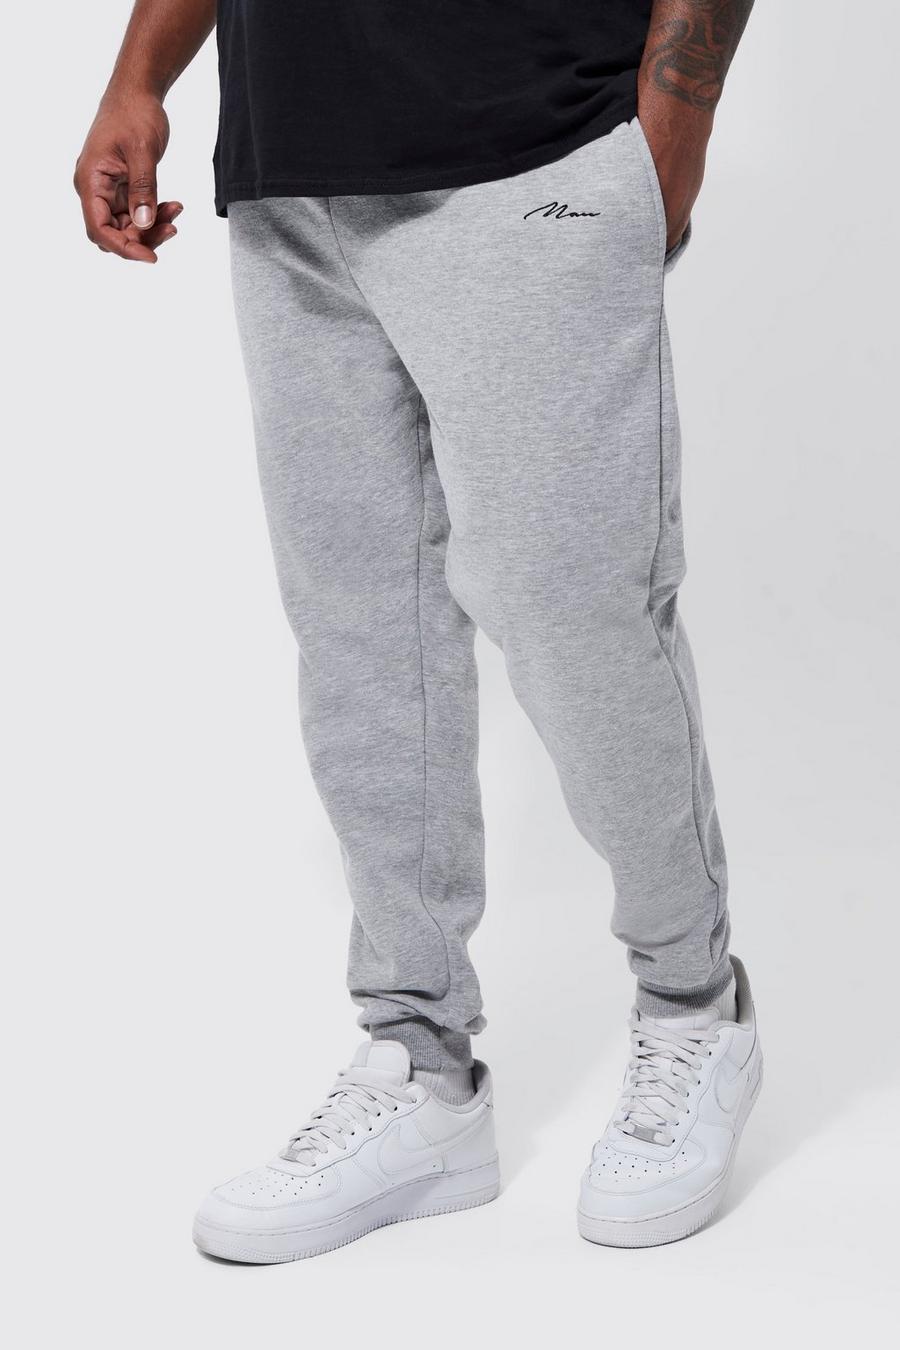 Pantalón deportivo Plus MAN pitillo con algodón ecológico, Grey marl gris